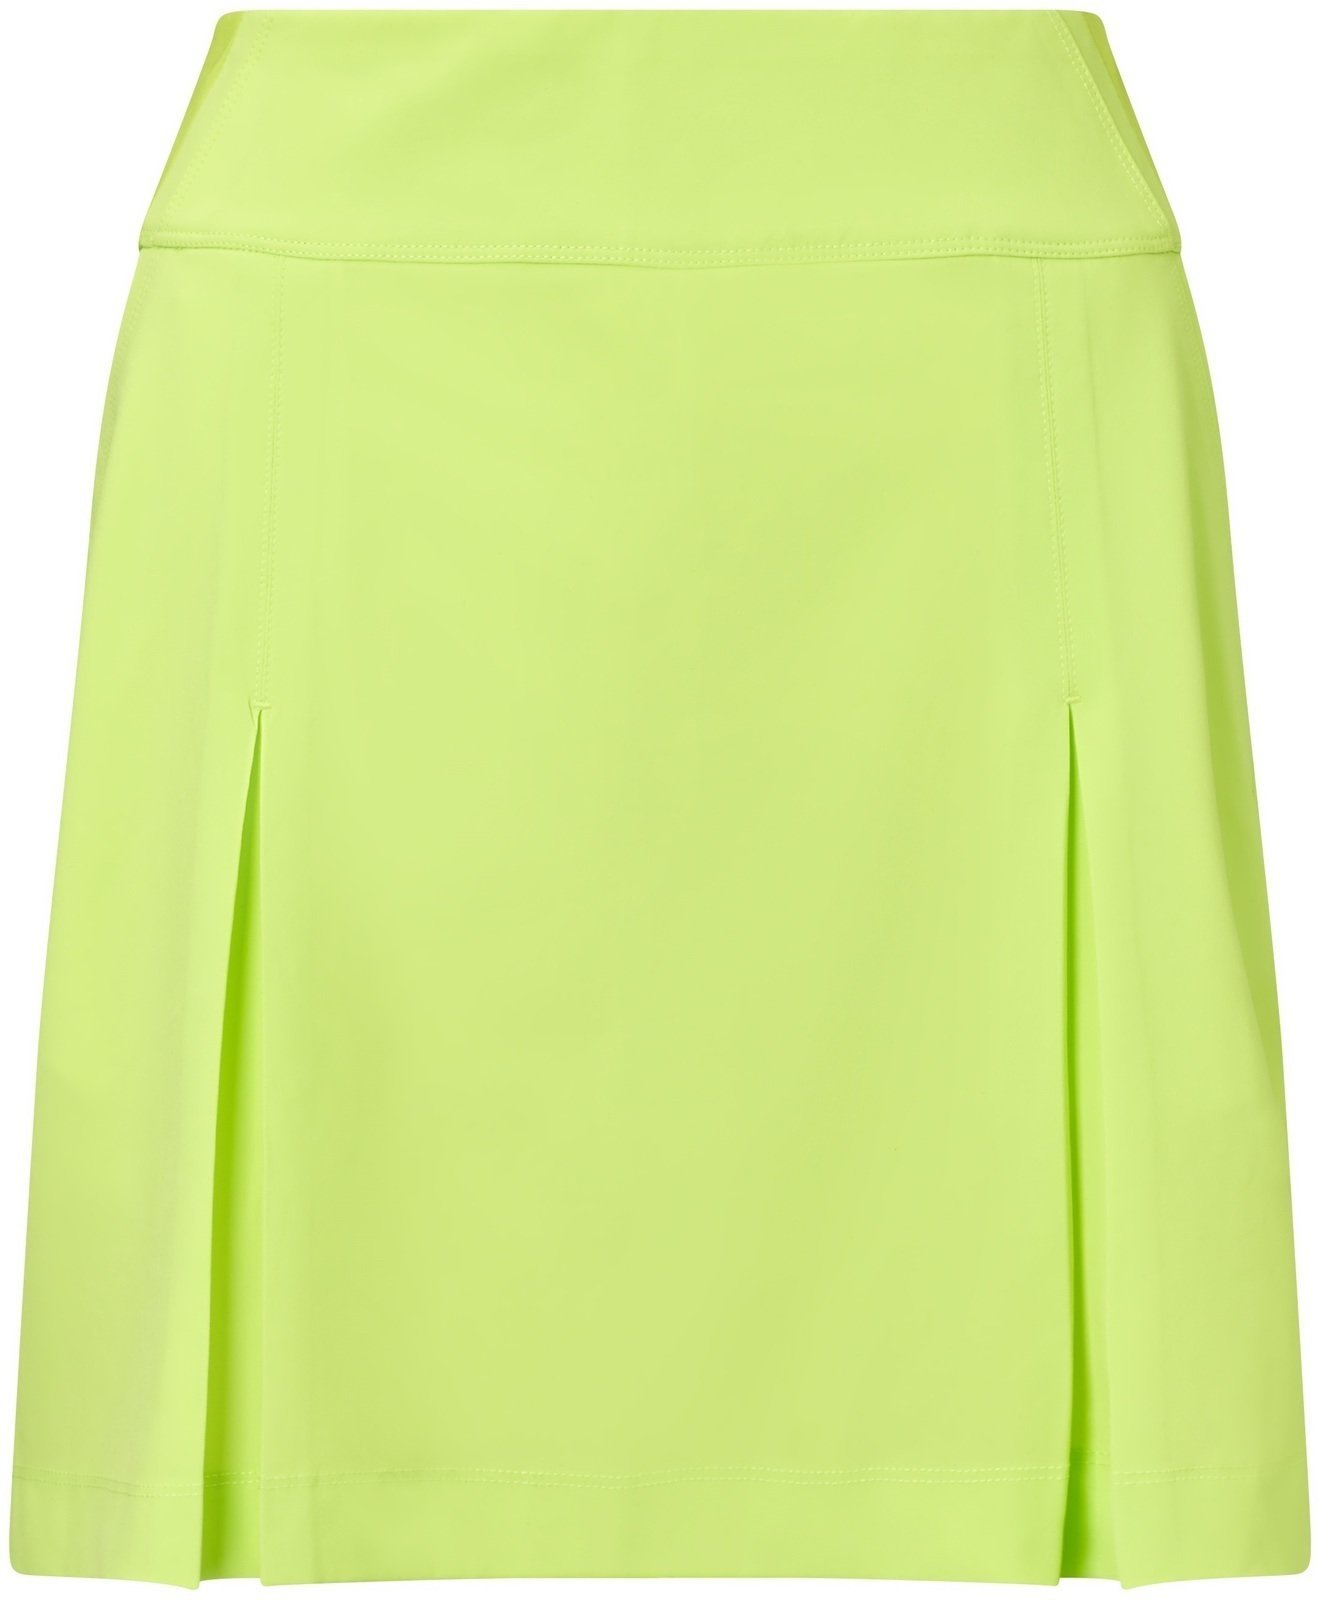 Skirt / Dress Callaway 18 All Day Skort Sharp Green S Womens